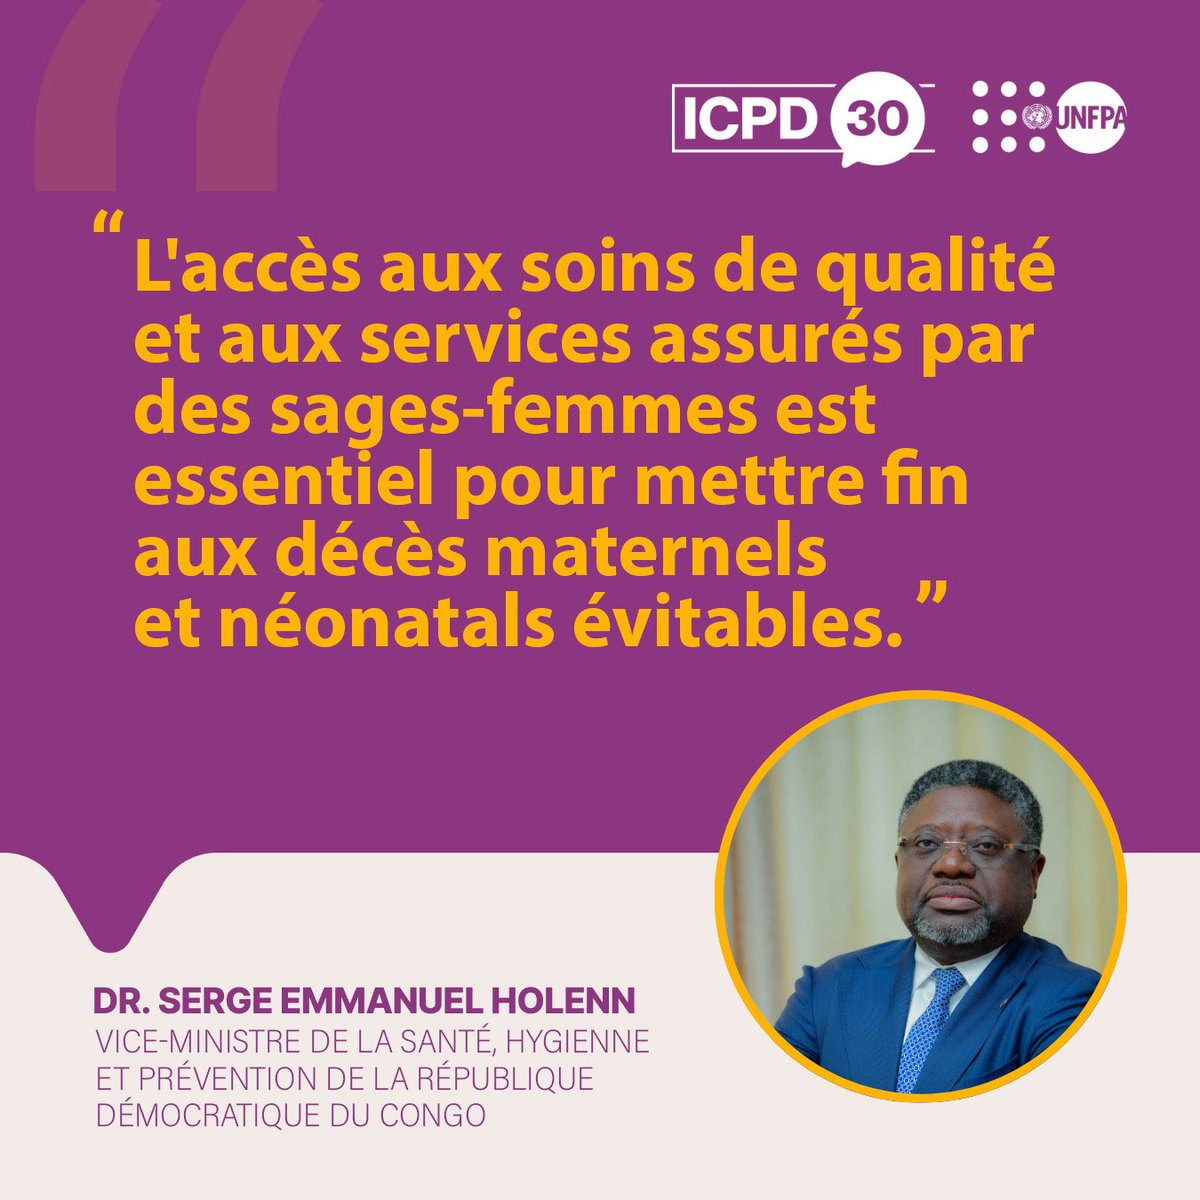 Side Event: 57eme session de la commission des Nations Unies sur la population & Développement. Le Vice-Ministre de la santé, Hygiène & Prévention de la #RDC, intervient ce jour à New-York, au panel de haut niveau sur 'Mettre fin aux décès maternels évitables'. #MaternalHealth